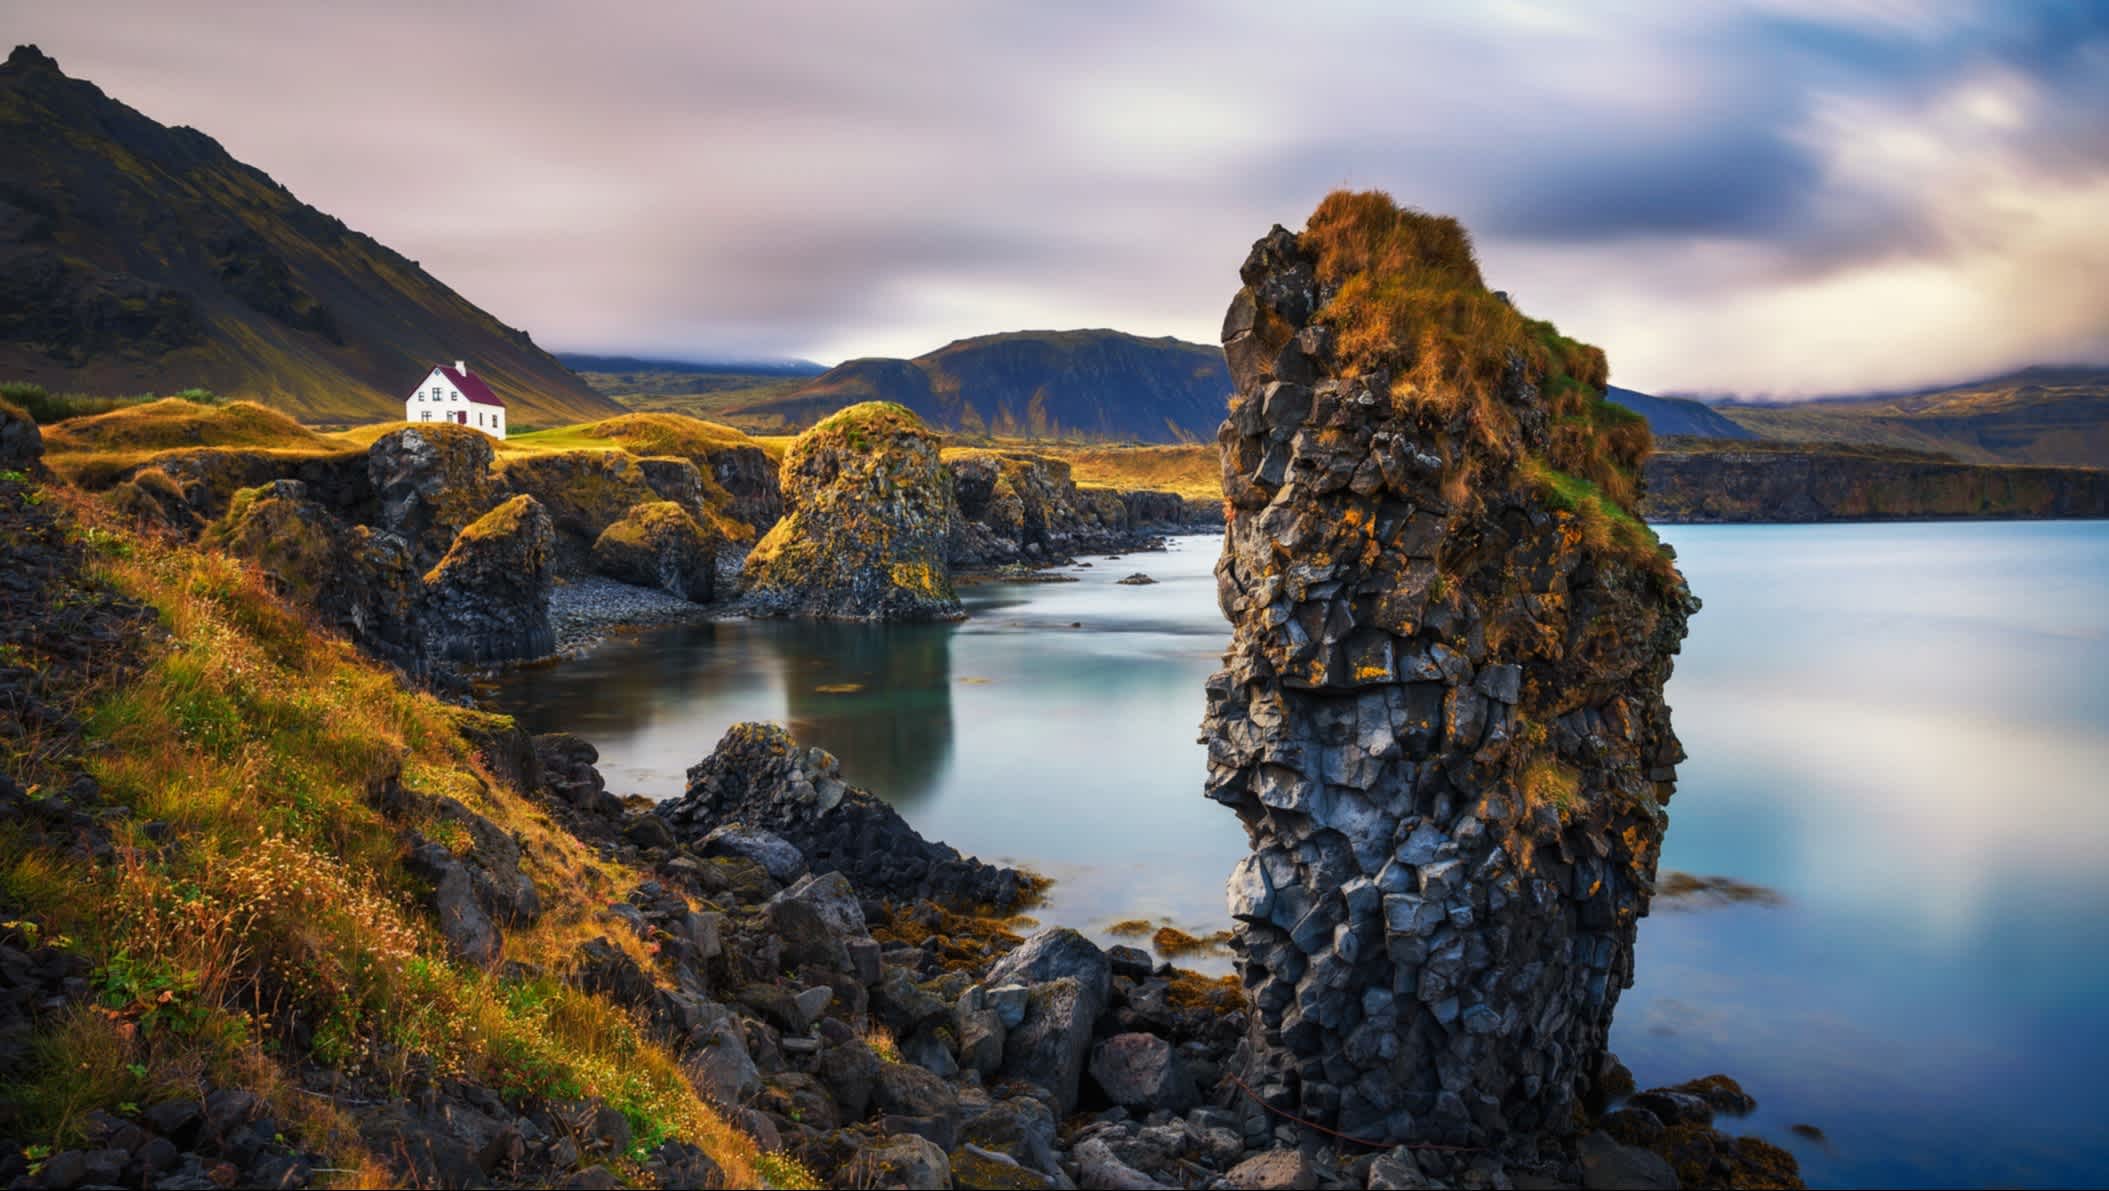 Une vue de la côte et des rochers avec une maison isolée. Des couleurs d'automne avec des montagnes enneigées en arrière-plan. P�éninsule de Snaefellsnes en Islande